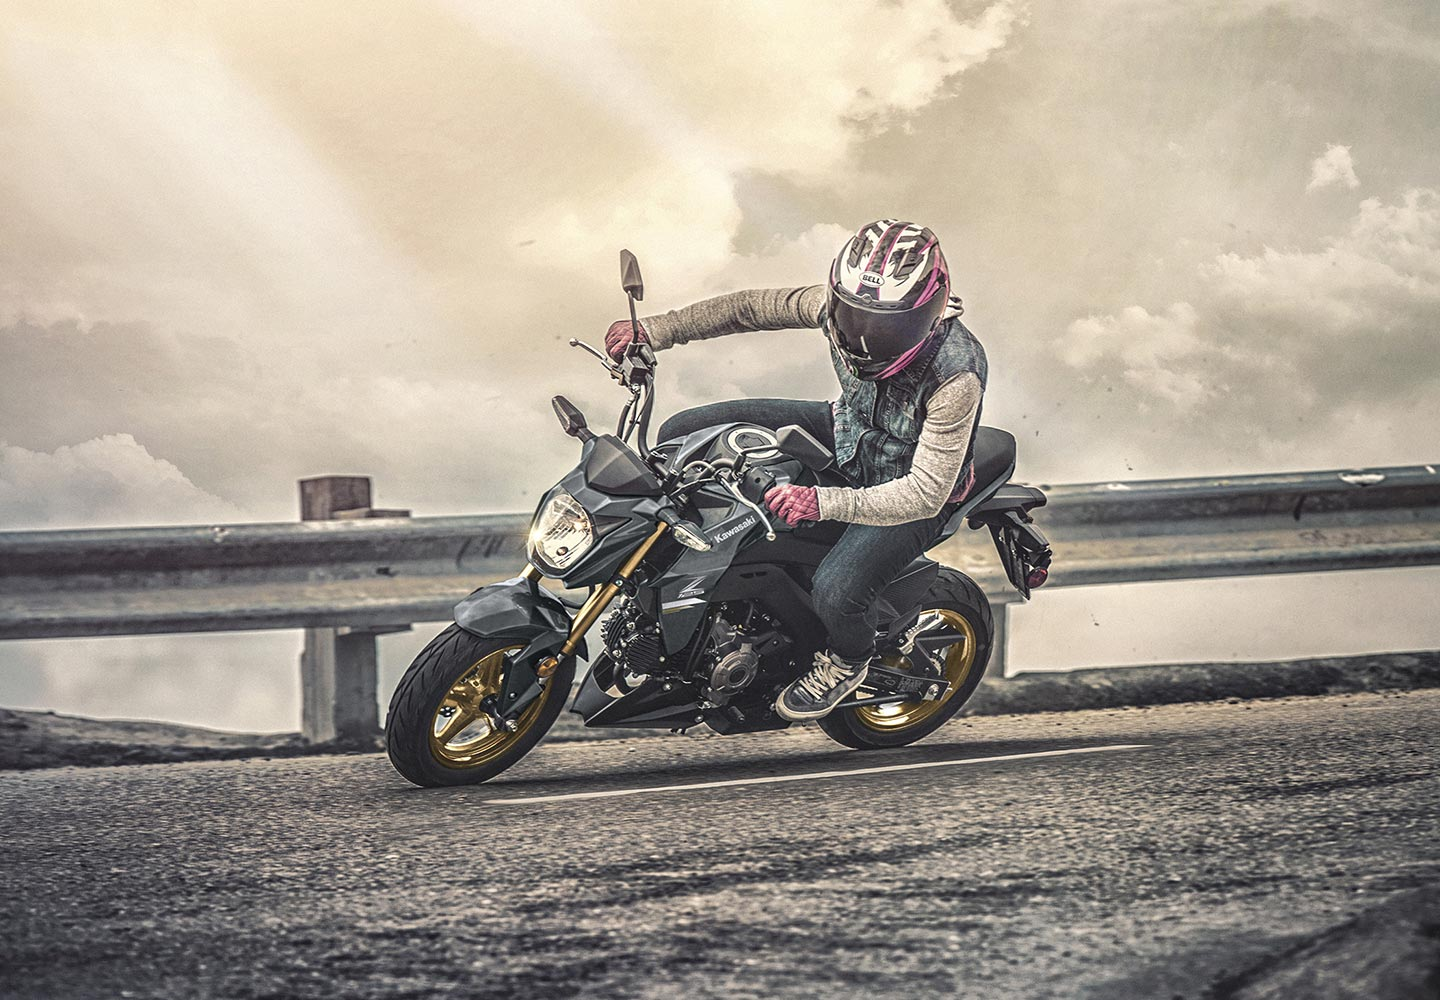 Kawasaki Z125 PRO | Naked Motorcycle | Nimble & Fun